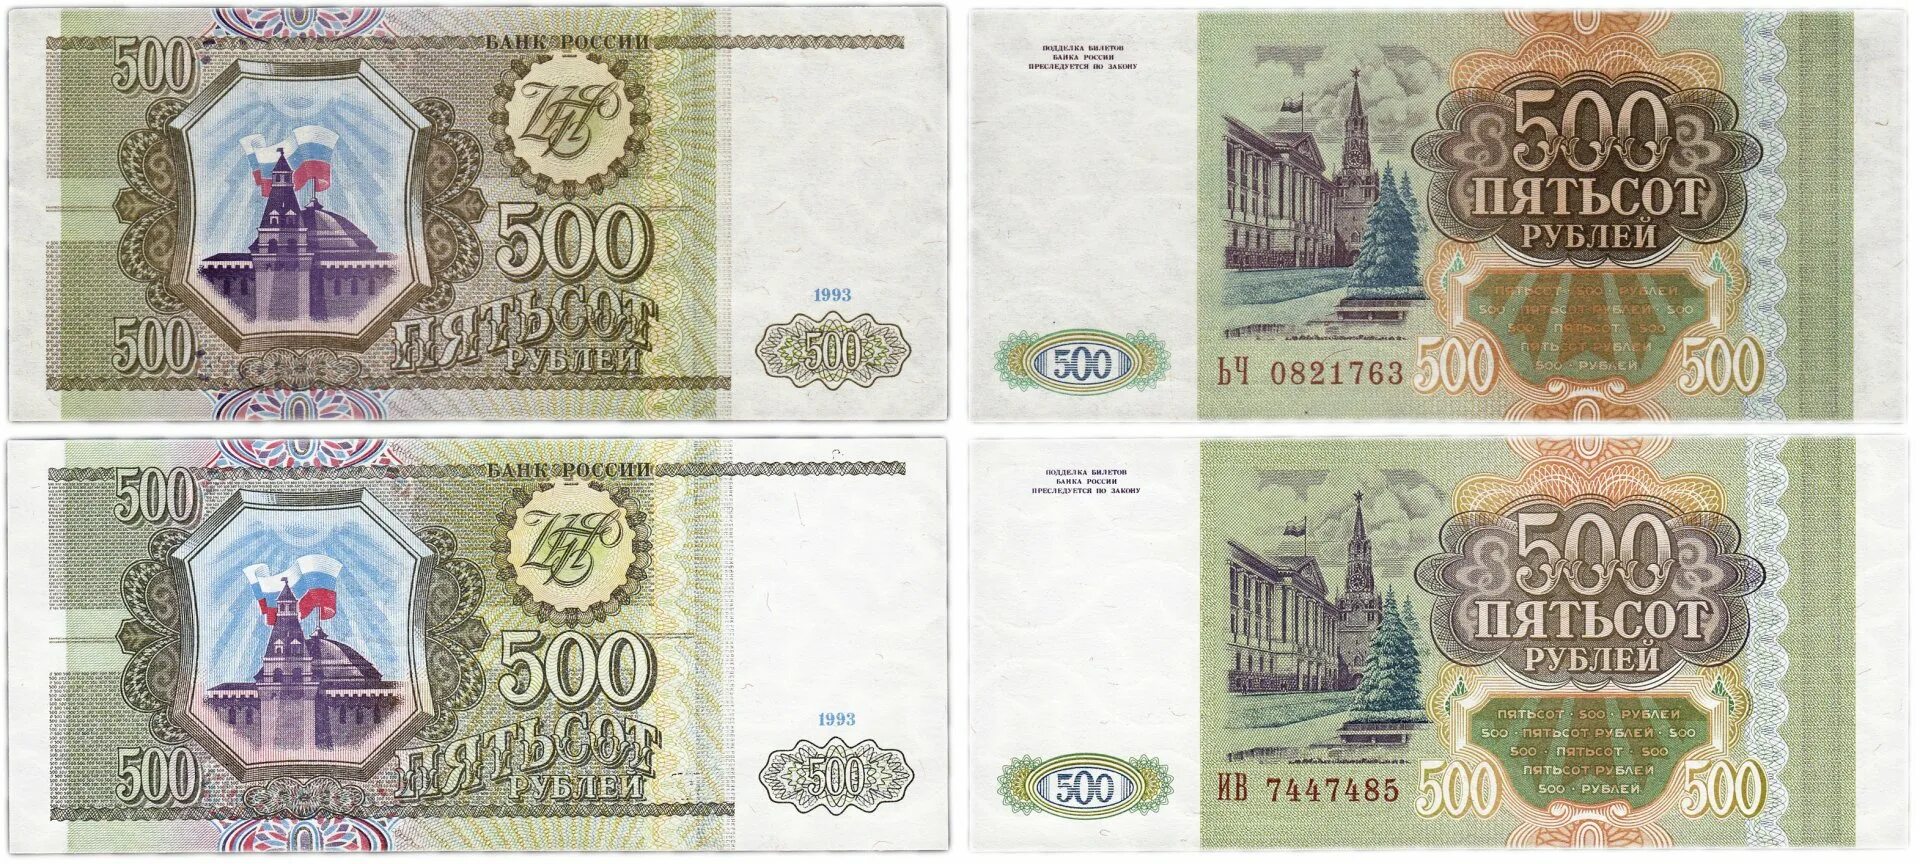 500 Тысяч рублей 1993. Пятьсот рублей 1993 года. 500 Рублей 1993 года бумажные. 100 И 500 рублей 1993 года бумажные.